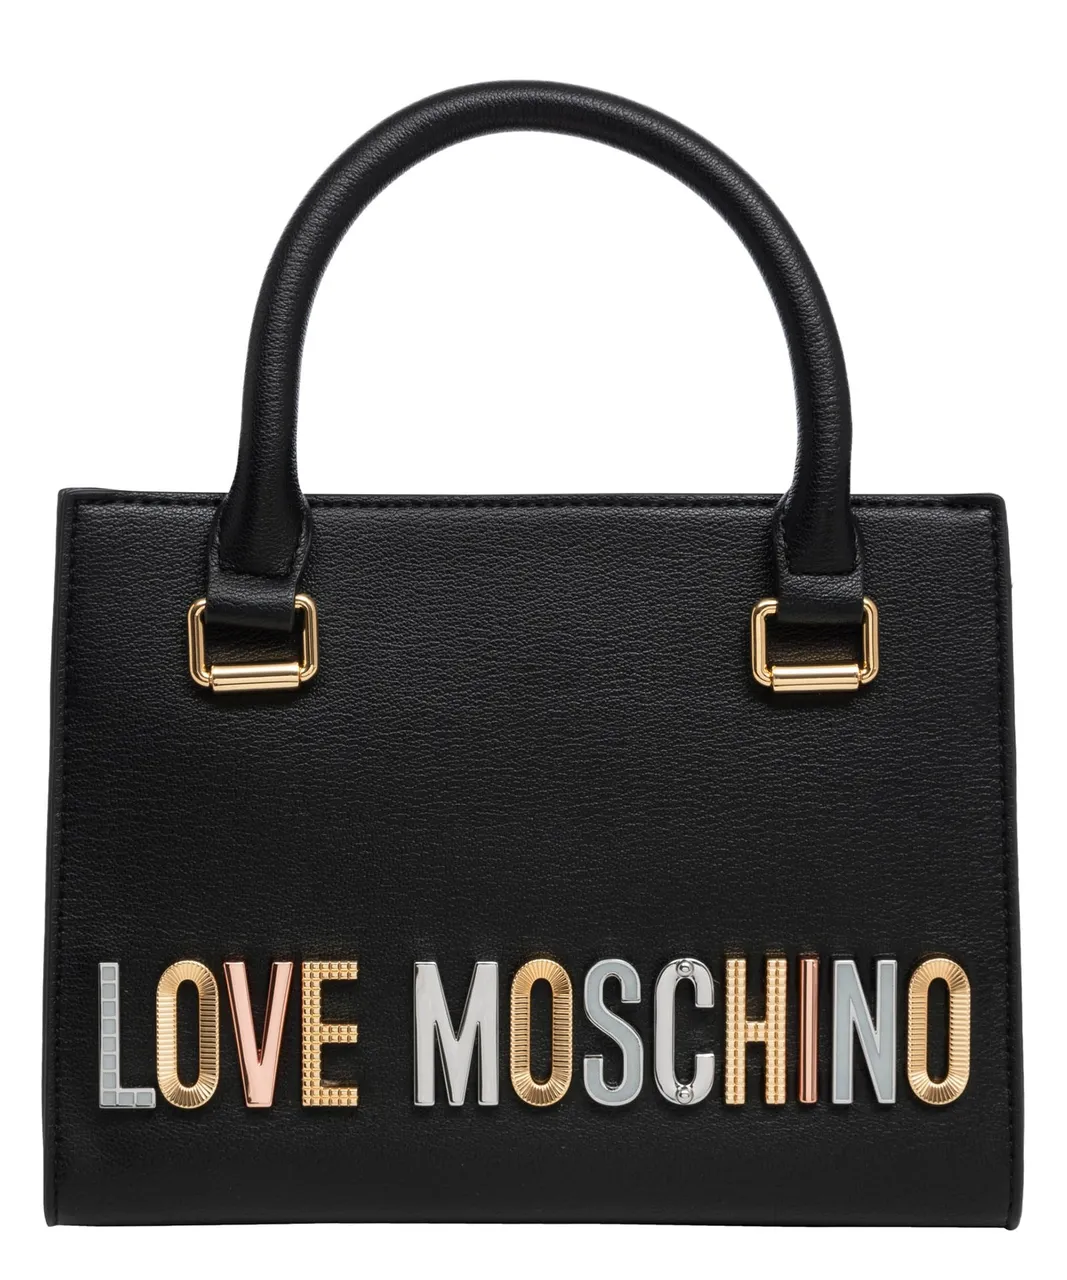 Love Moschino women handbags black